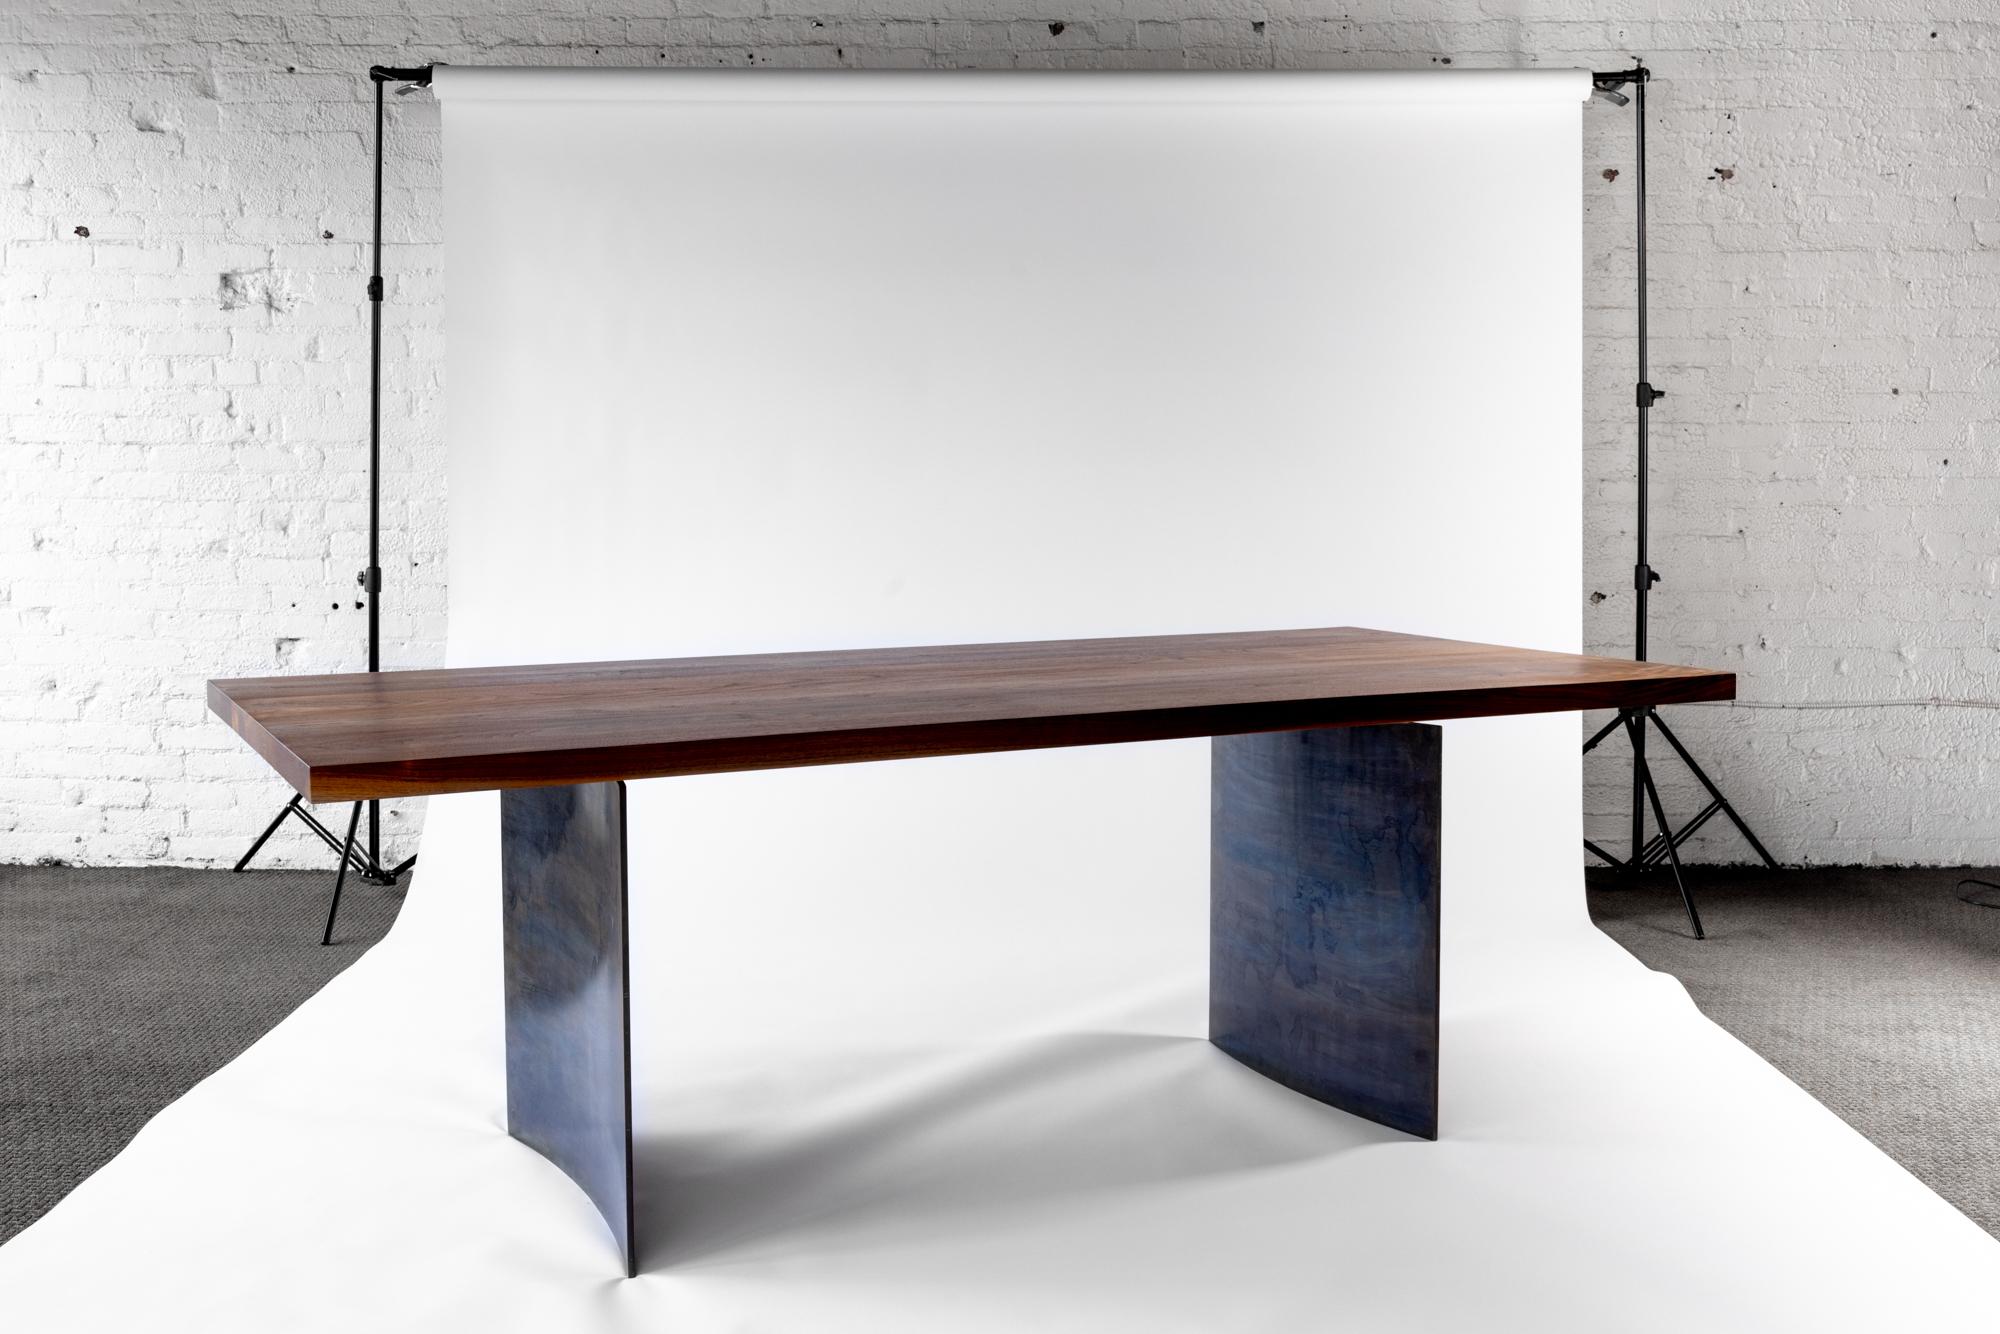 Voici la table Ban Walnut, une pièce maîtresse luxueuse qui respire l'élégance et la sophistication dans les salles à manger contemporaines. Fabriqué avec le plus grand soin et la plus grande précision, ce chef-d'œuvre d'Autonomous Furniture met en